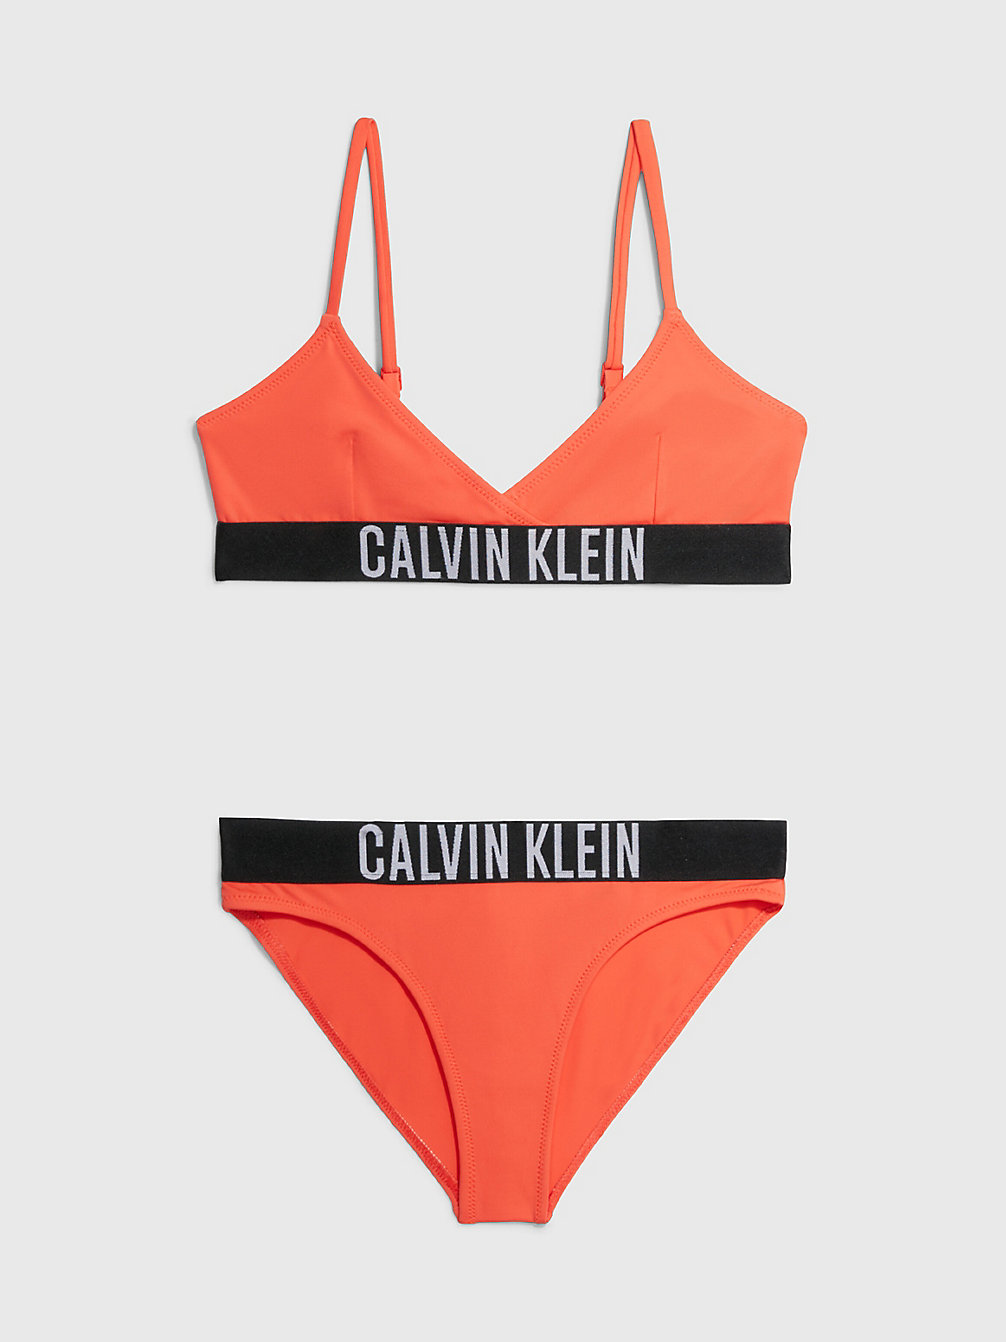 BRIGHT VERMILLION > Triangel-Bikini-Set Für Mädchen - Intense Power > undefined Maedchen - Calvin Klein